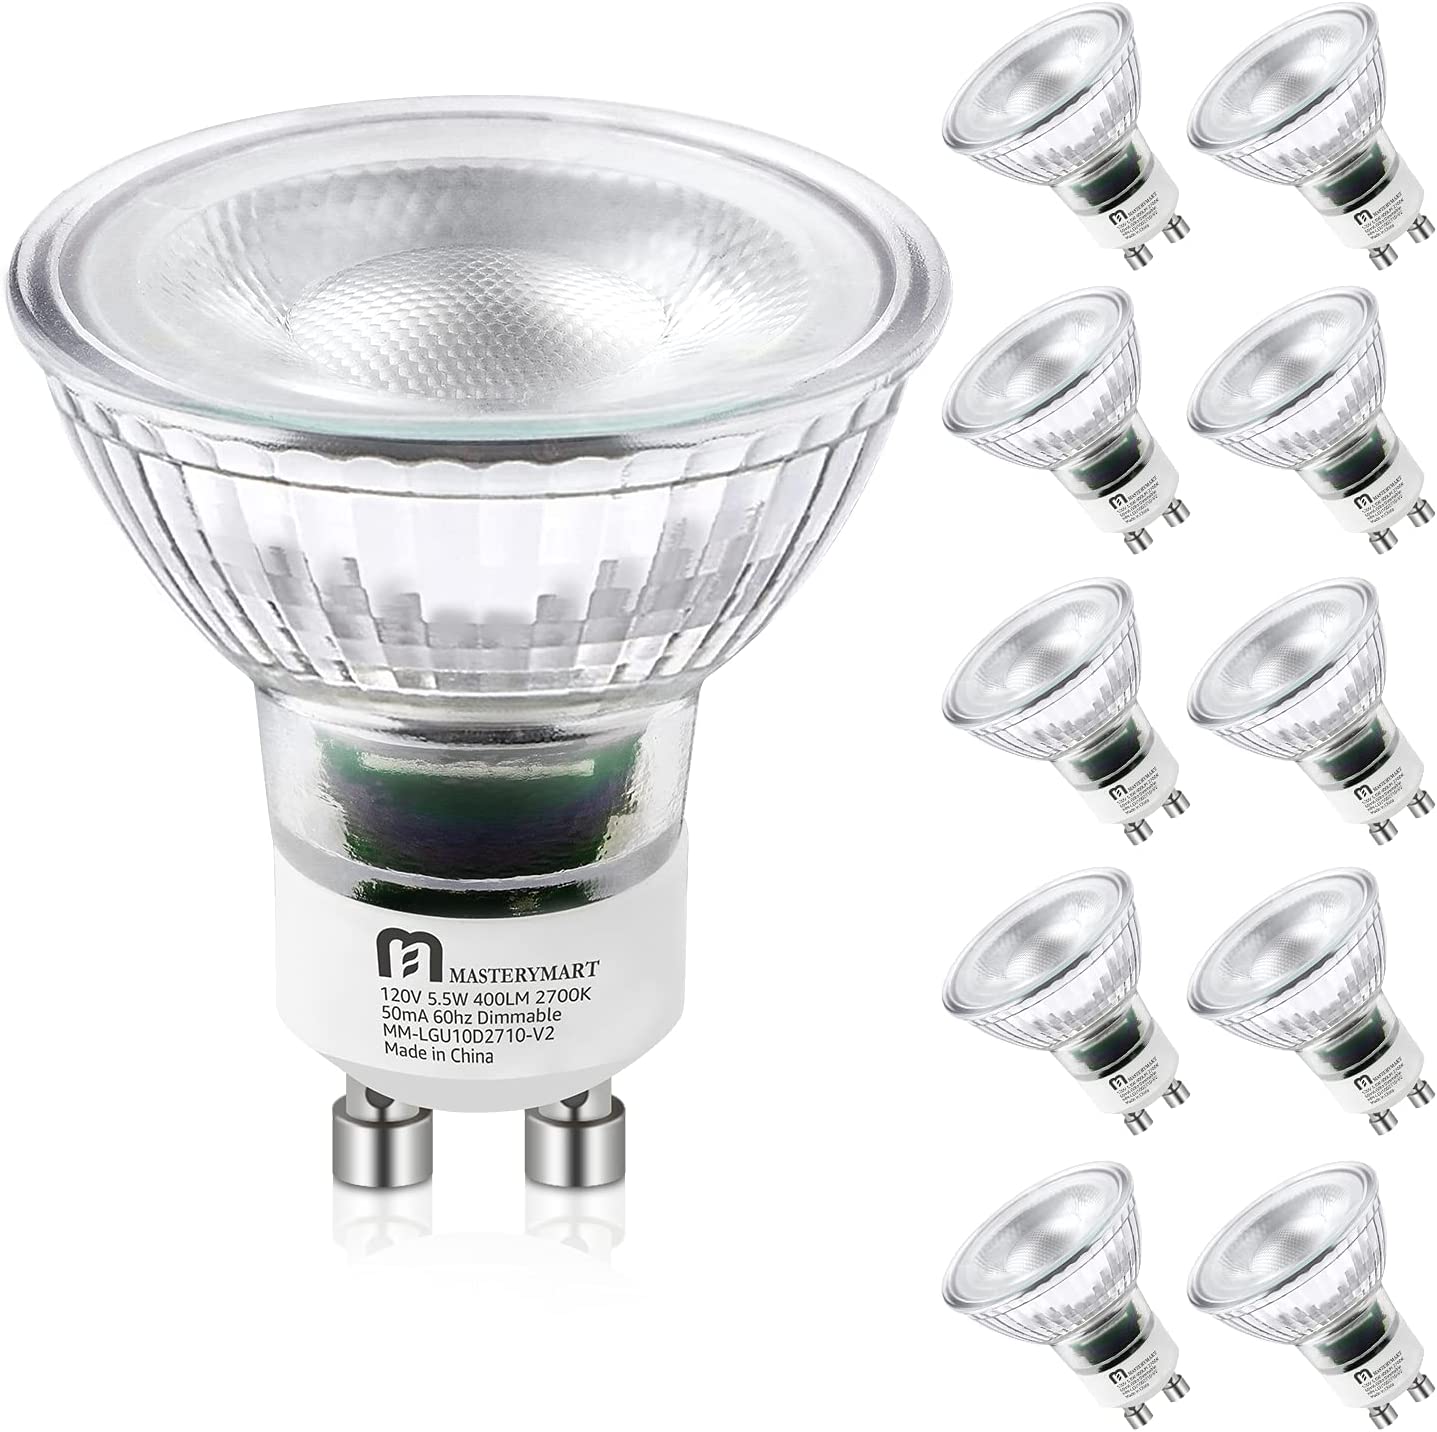 MASTERY MART GU10 LED Light Bulbs